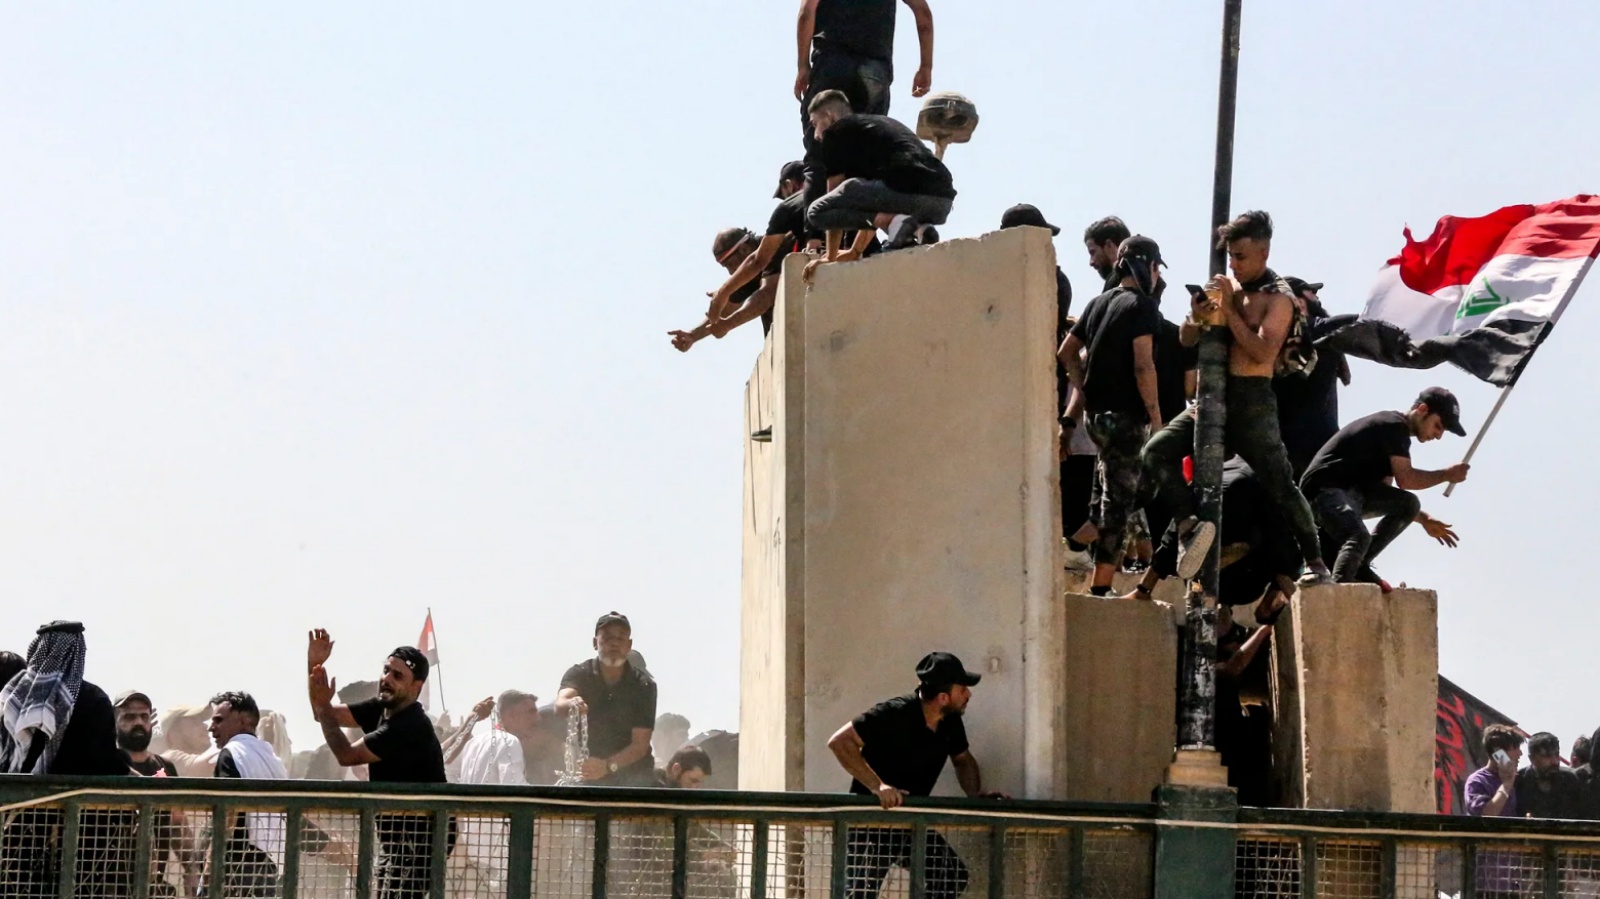 متظاهرون عراقيون يتسلّقون الحواجز الاسمنتية التي تمنع عبور جسر الجمهورية ويسقطون بعضها في 30 يوليو 2022